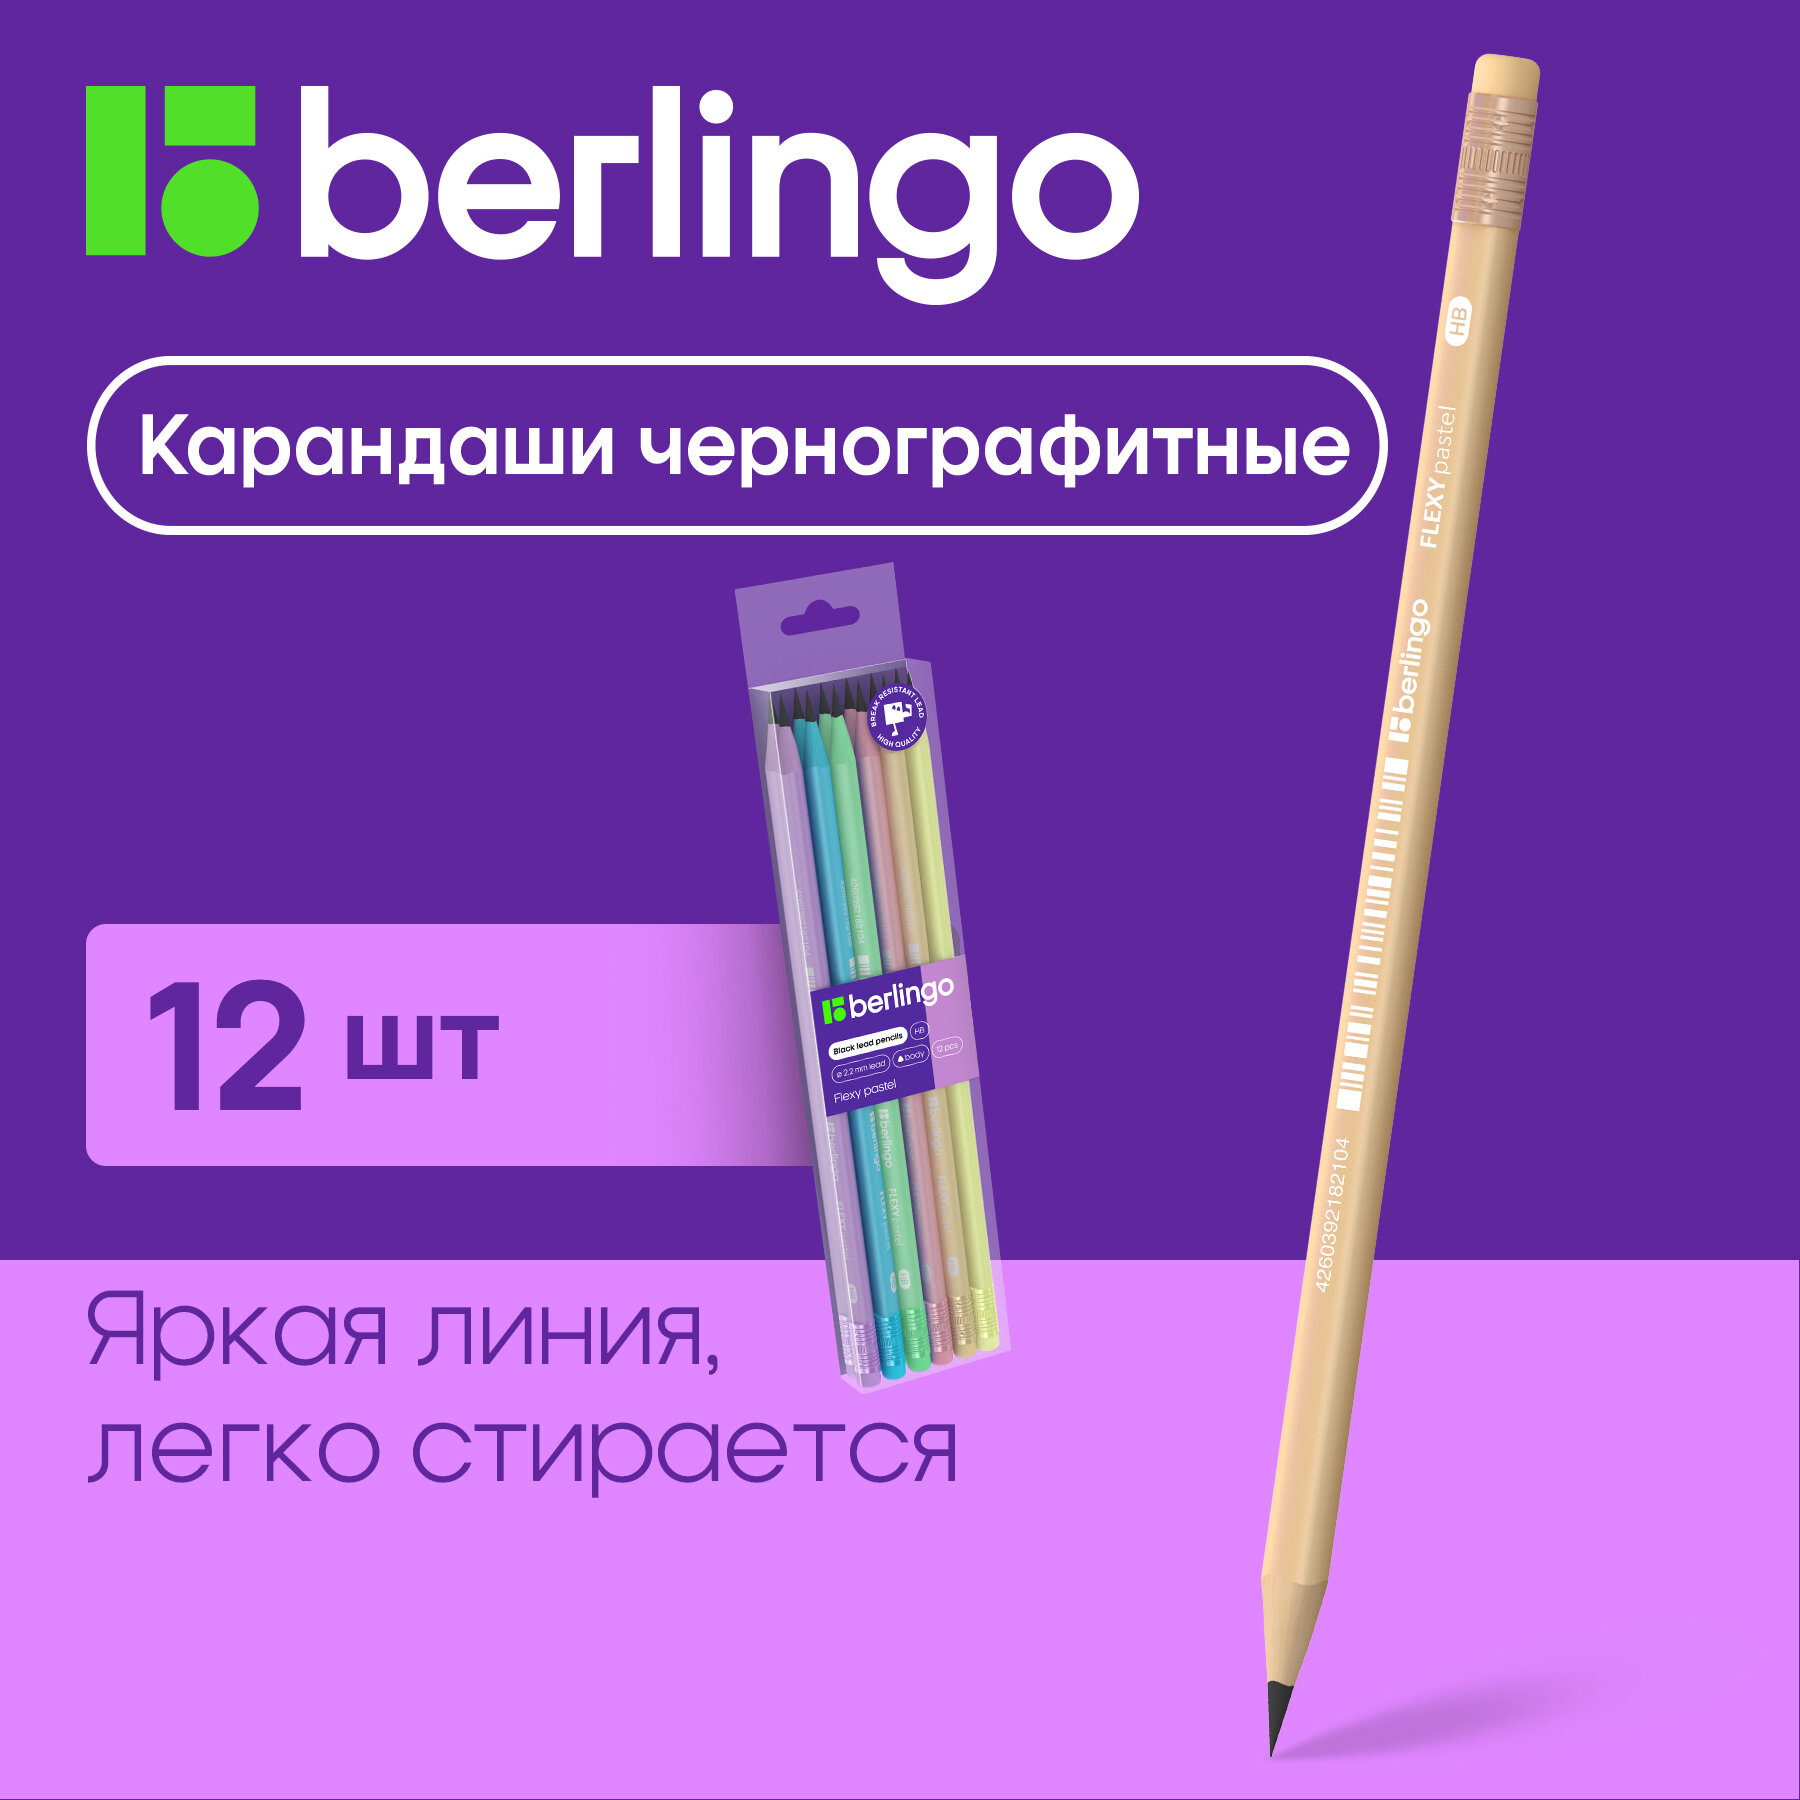 Карандаши для школы простые HB с ластиком / Набор чернографитных карандашей для офиса и рисования из 12 штук Berlingo "Flexy Pastel" / школьная канцелярия и принадлежности